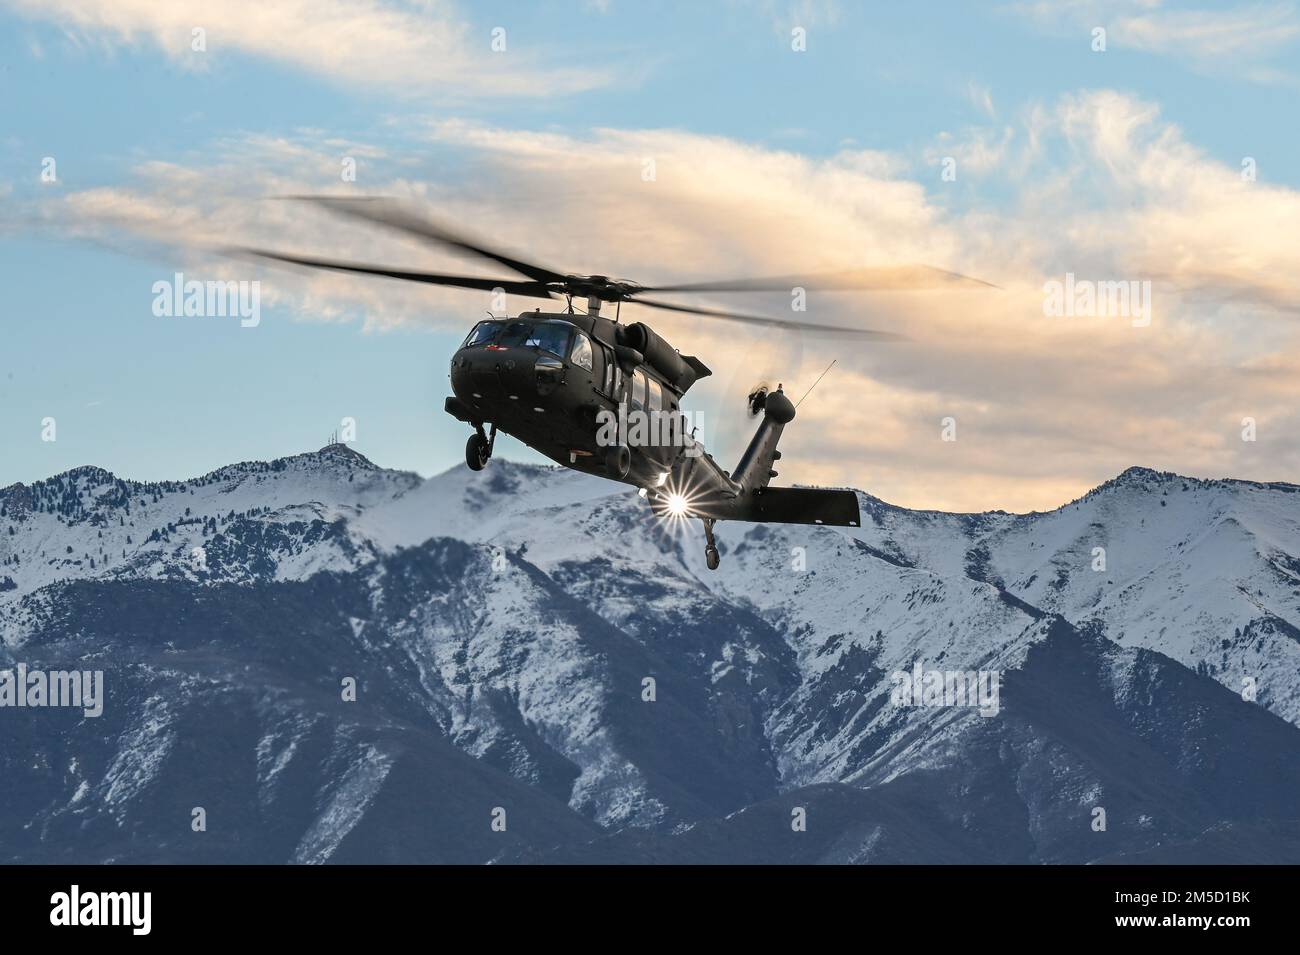 Un UH-60 Blackhawk si trova sopra il campo d'aviazione durante una serie di 5G test avionici il 2 marzo 2022, presso la base dell'aeronautica militare di Hill, Utah. Durante il test è stata utilizzata una stazione di prova mobile 5G come parte della dimostrazione per implementare le tecnologie 5G senza compromettere la sicurezza degli aerei militari e civili. Foto Stock